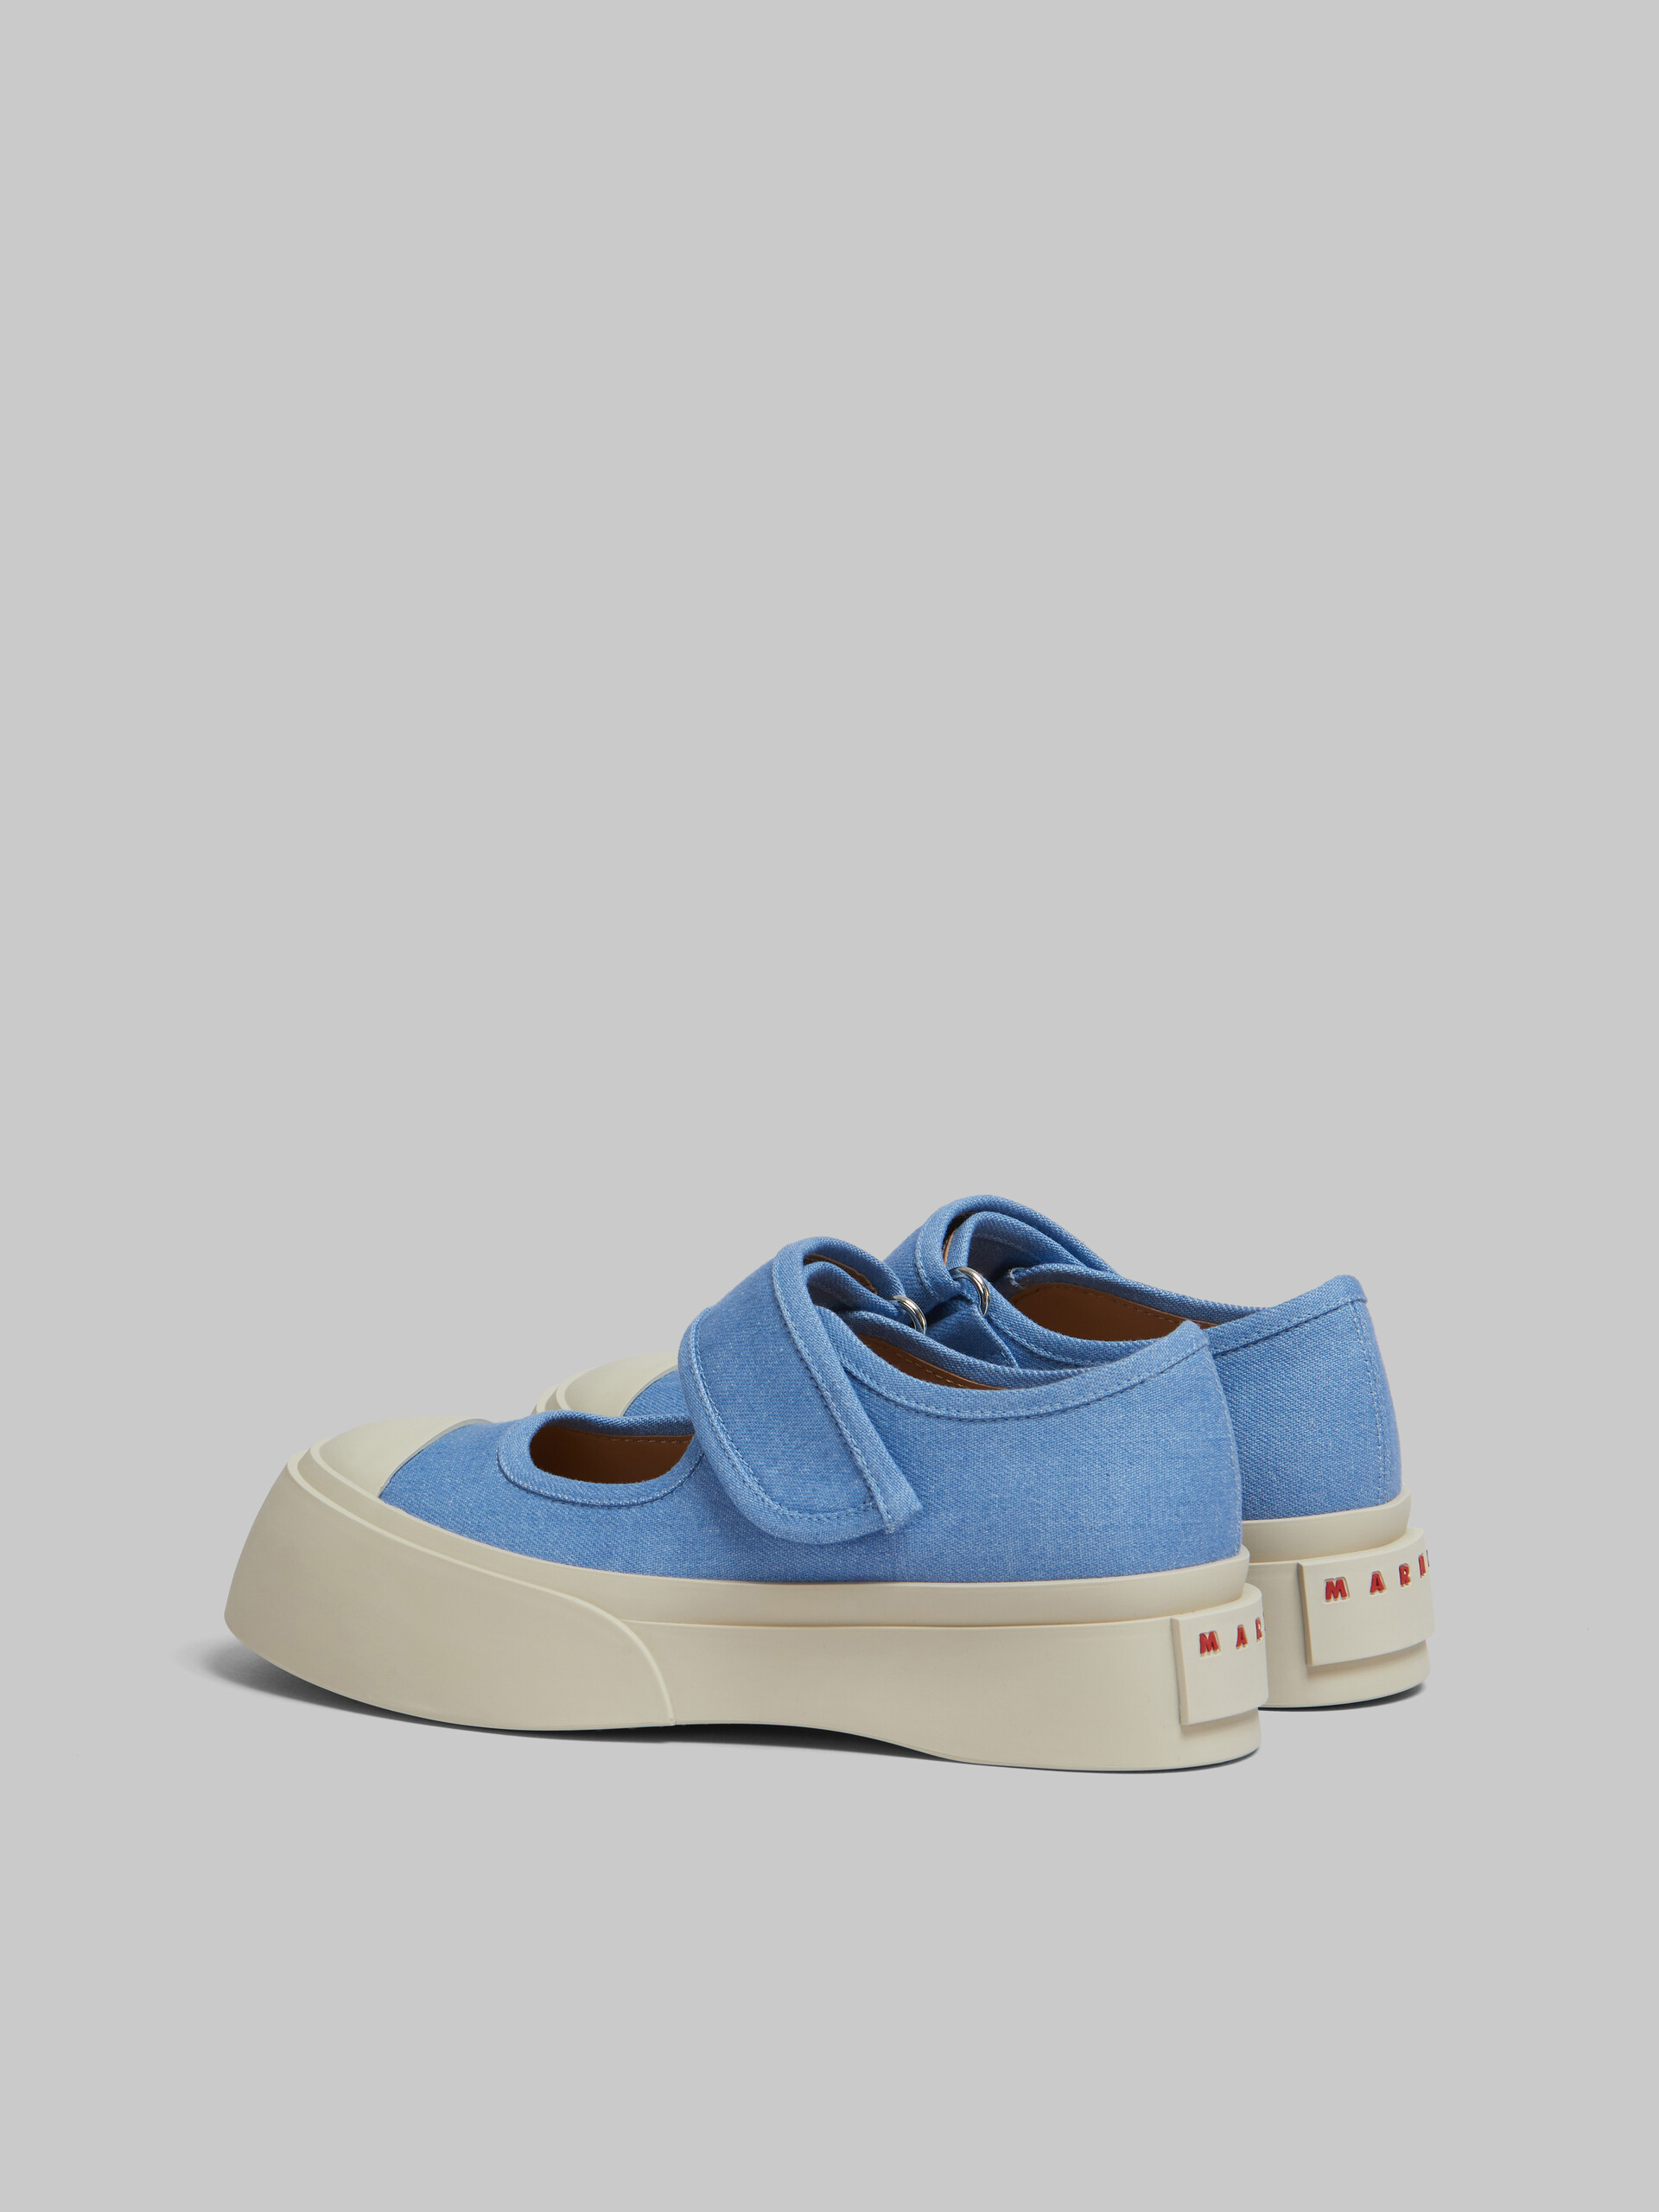 Zapatilla Mary Jane de denim azul claro - Sneakers - Image 3